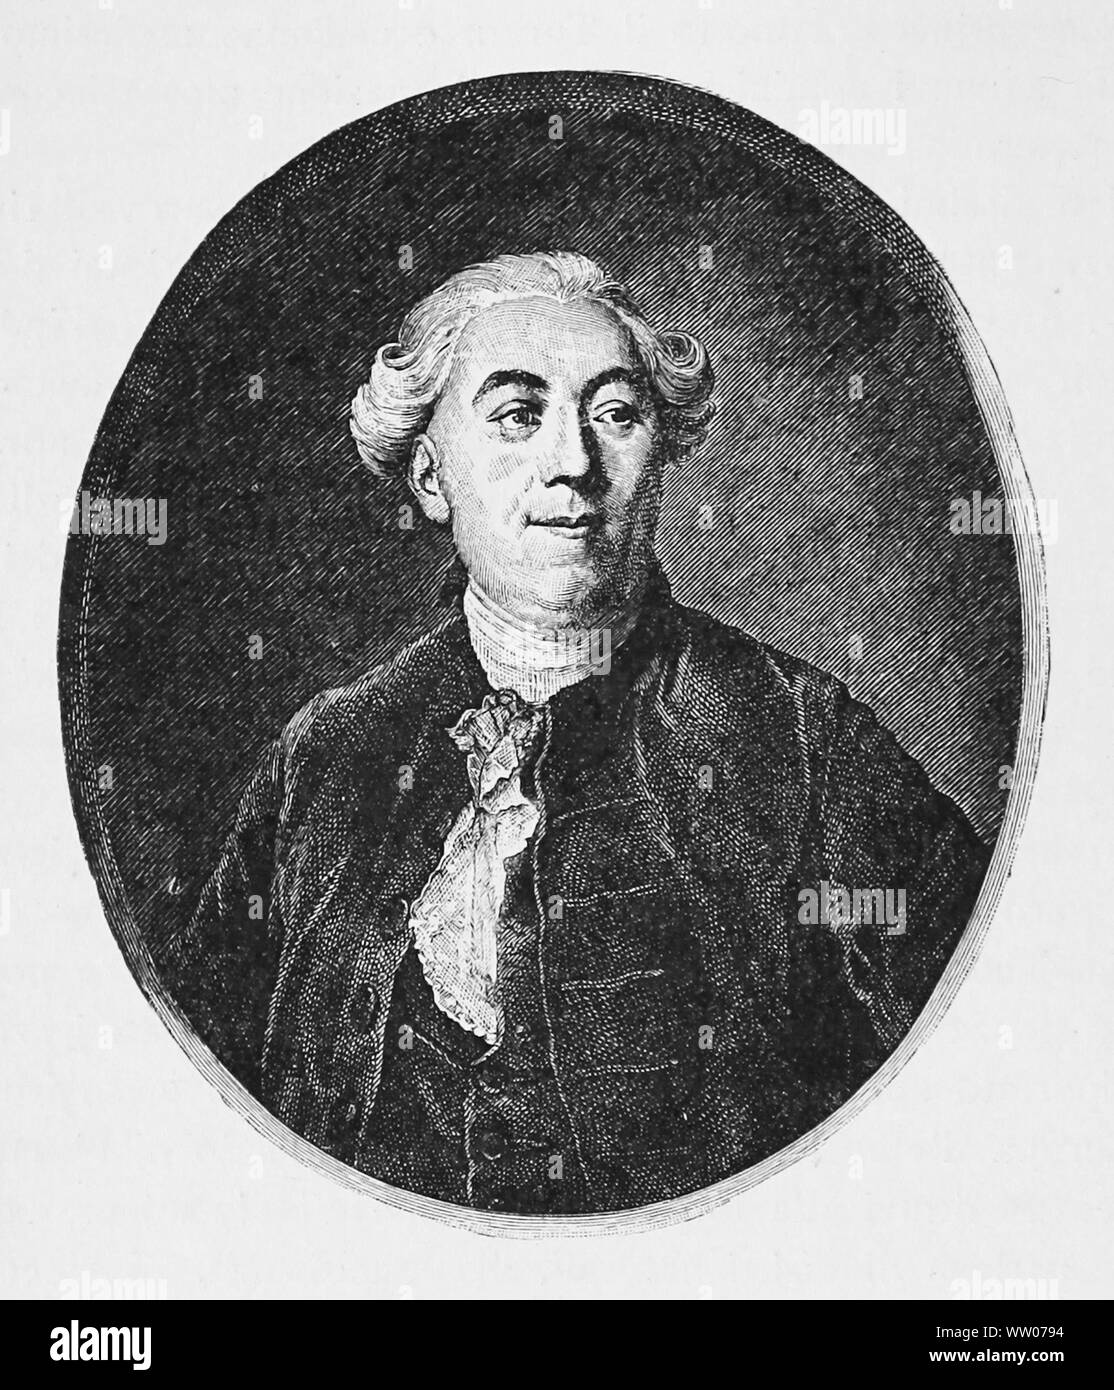 Jacques Necker (1732 - 1804), banquier suisse et le ministre des Finances de Louis XVI de France a joué un rôle important dans l'histoire française et de la Révolution française Banque D'Images